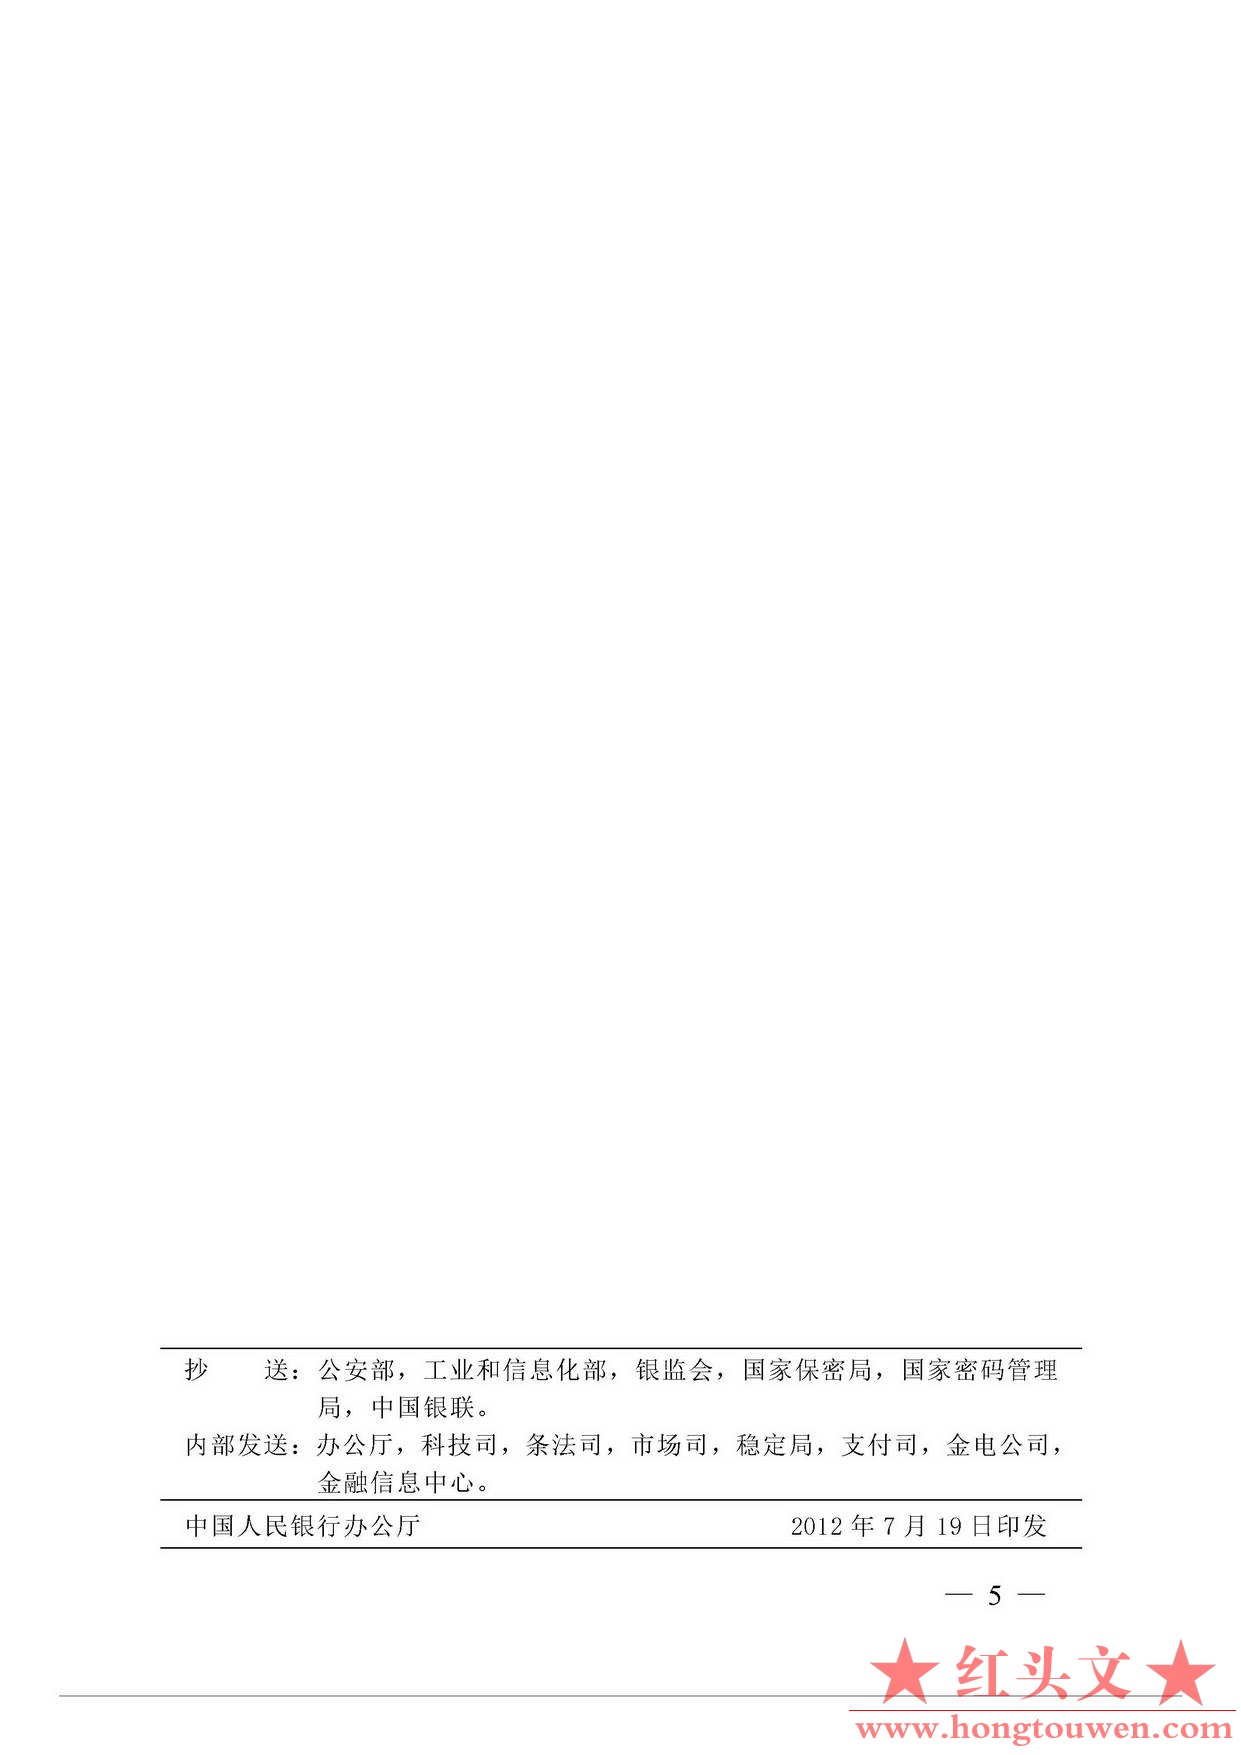 银发[2012]177号-中国人民银行关于进一步推进银行业信息安全等级保护工作的通知_页面_.jpg